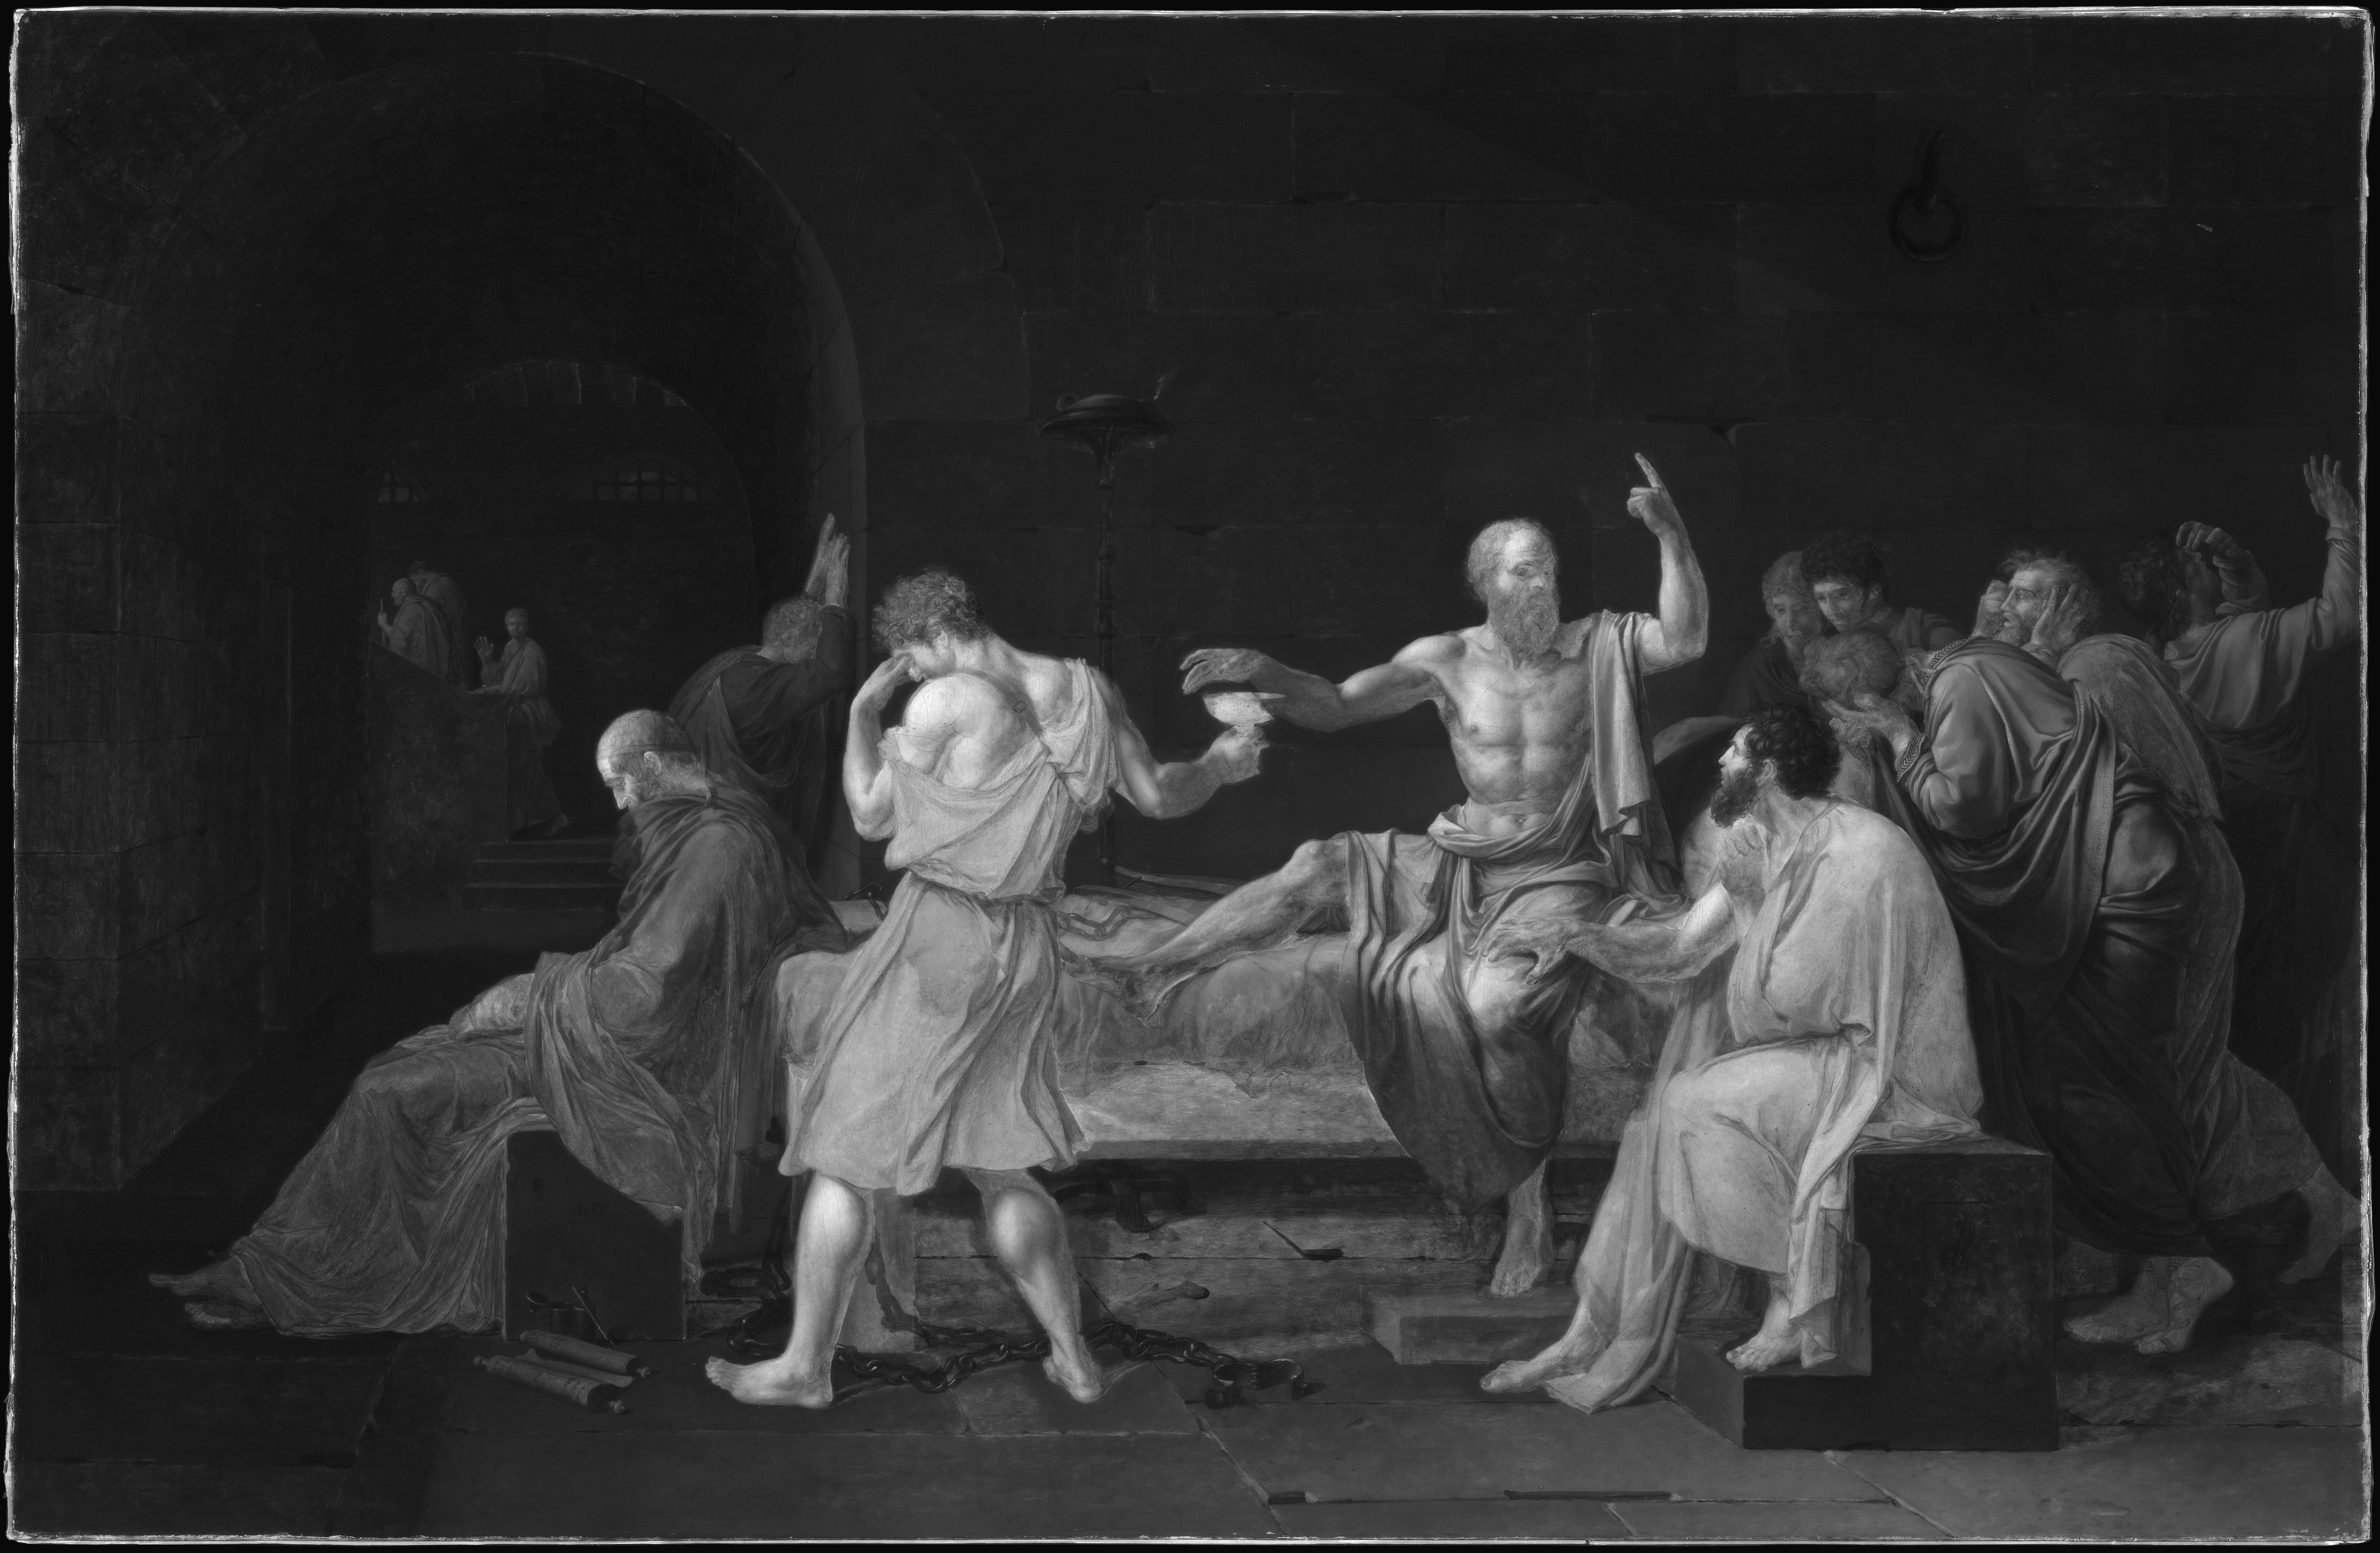 Jacques david-la Death de SOCRATES vintage son impresiones artísticas